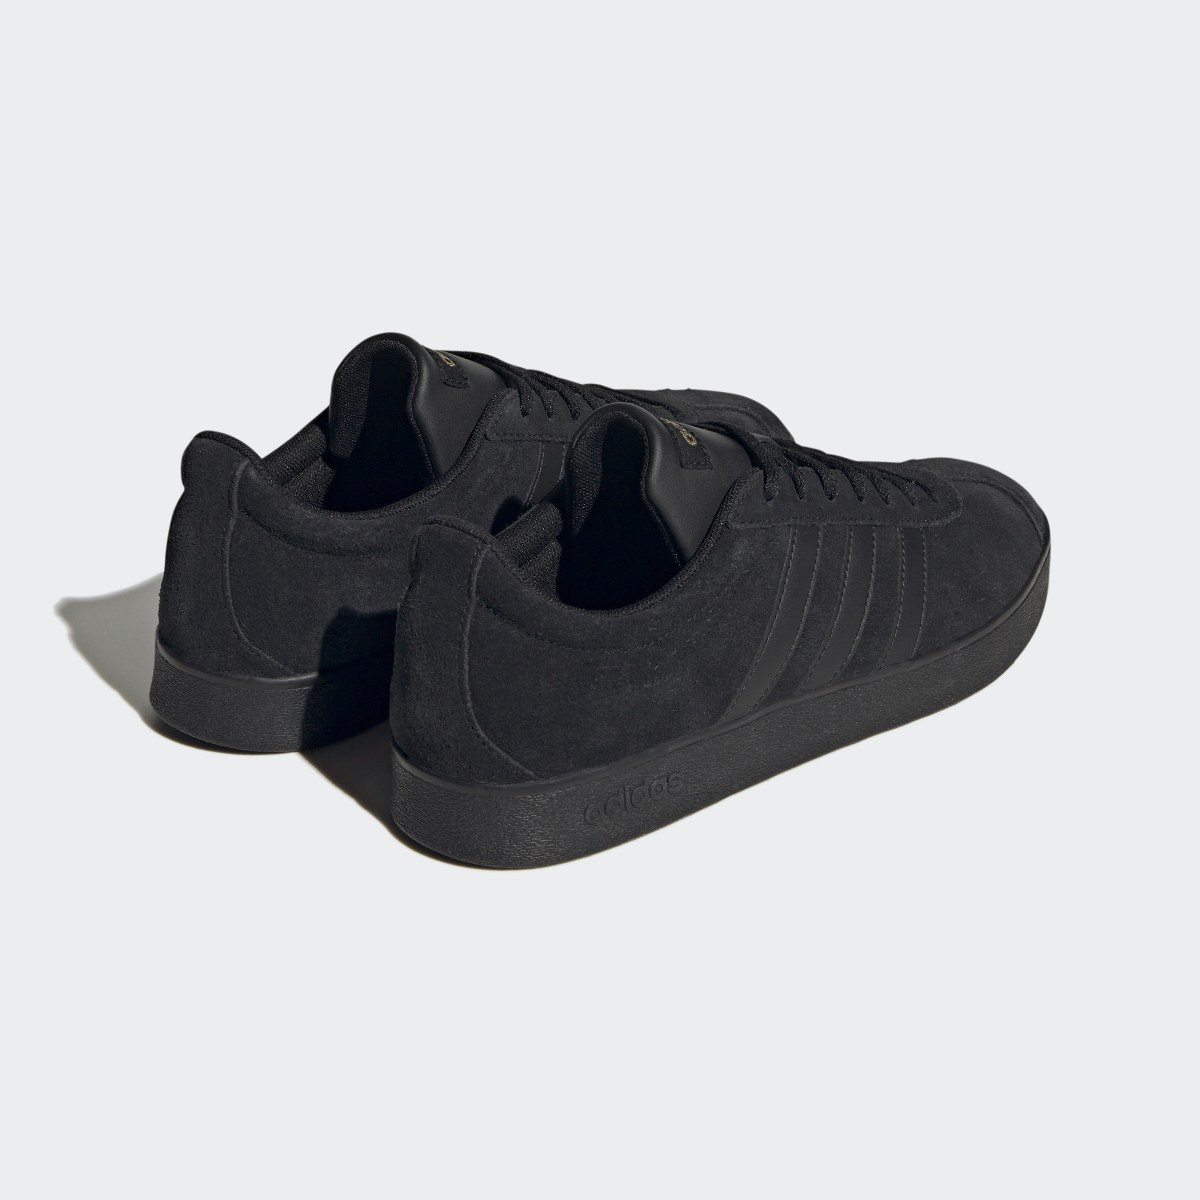 Adidas VL Court 2.0 Schuh. 6